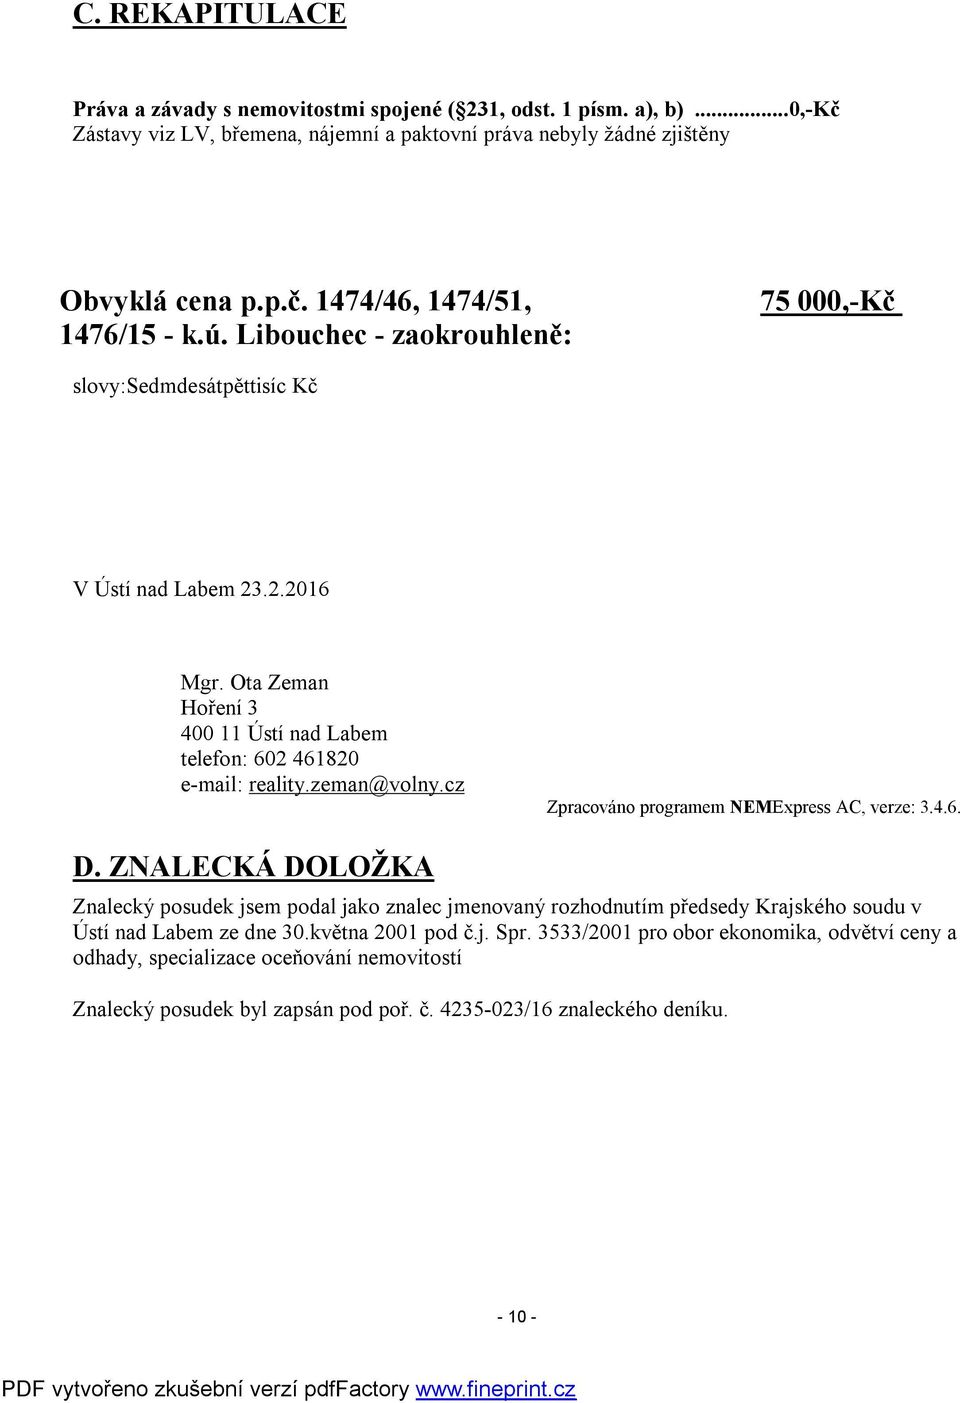 cz Zpracováno programem NEMExpress AC, verze: 3.4.6. D. ZNALECKÁ DOLOŽKA Znalecký posudek jsem podal jako znalec jmenovaný rozhodnutím předsedy Krajského soudu v Ústí nad Labem ze dne 30.